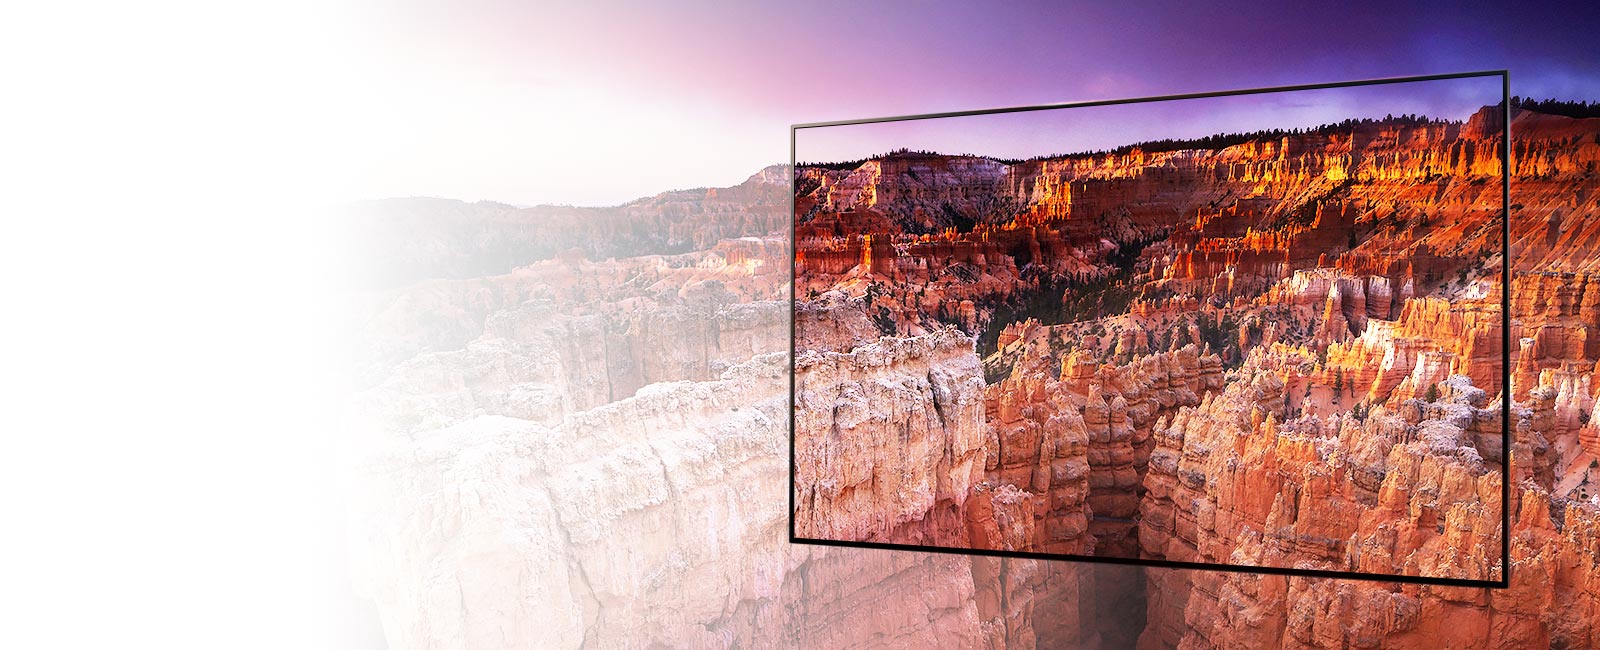 Un marco capturando una escena del Parque Nacional Bryce Canyon